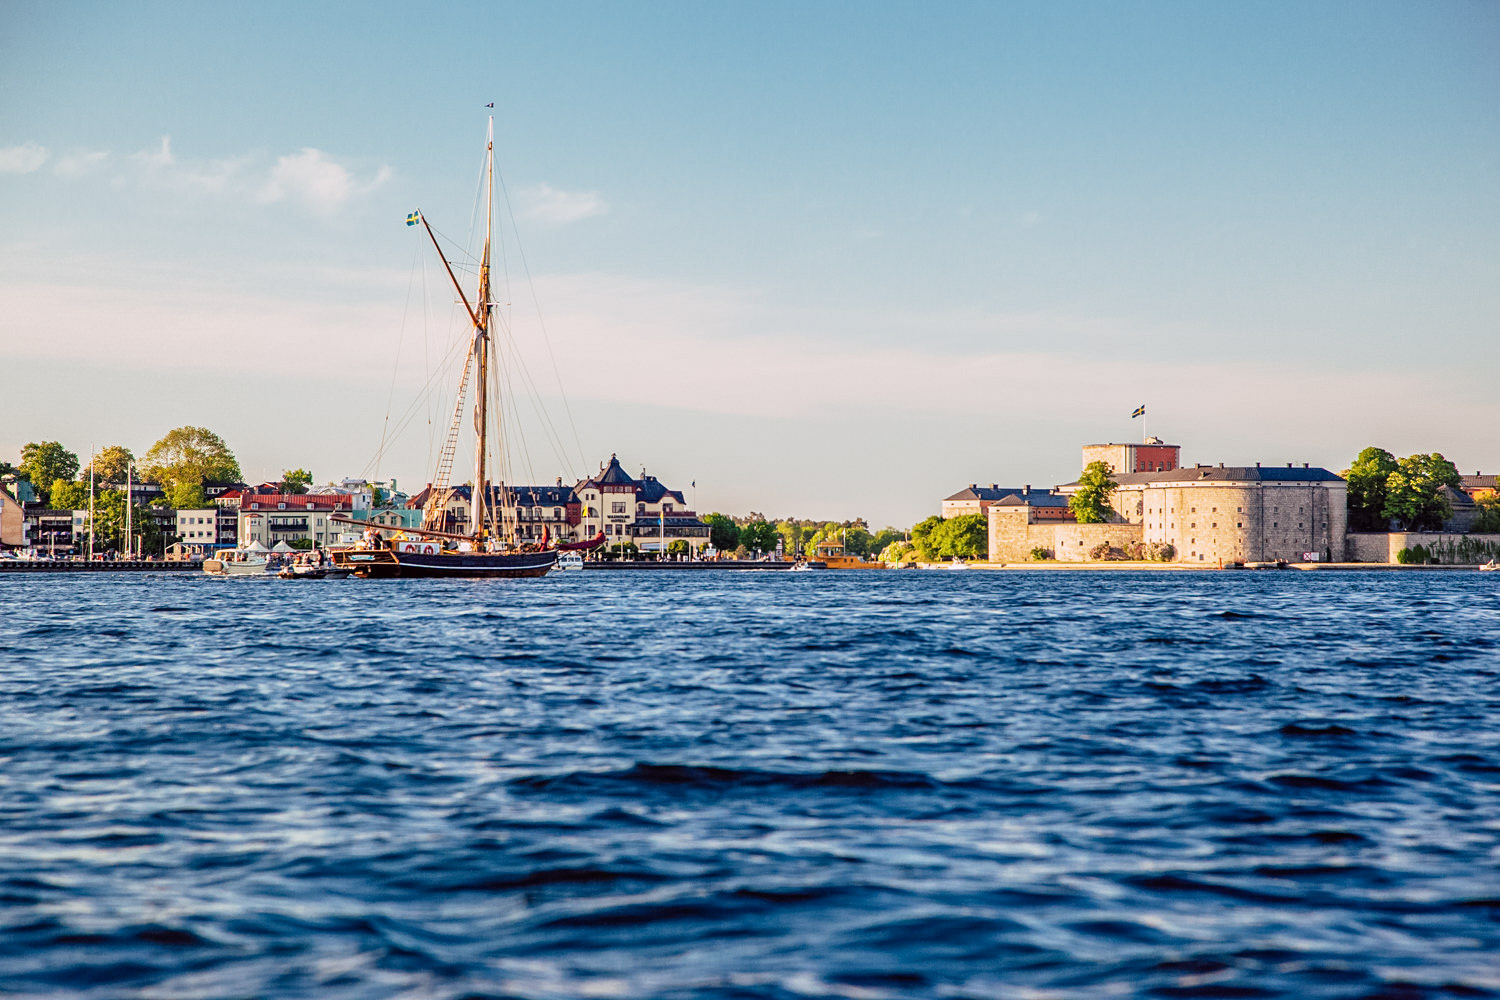 skargardens-kanotcenter-vaxholm-kastellet-guest-harbour